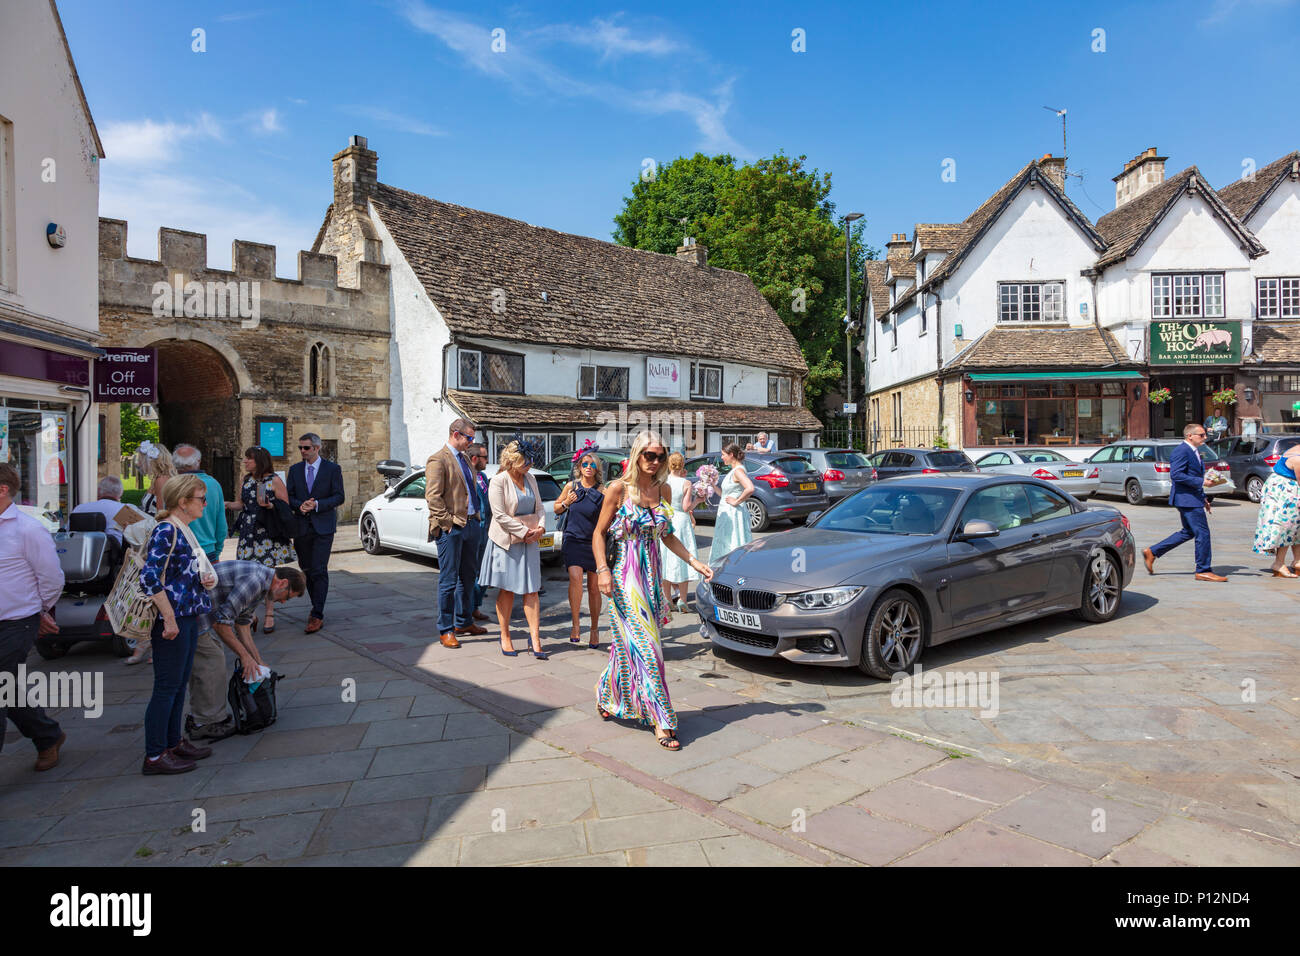 Les invités du mariage et demoiselles dans la place du marché après un mariage à l'abbaye de Malmesbury, Wiltshire, Royaume-Uni Banque D'Images